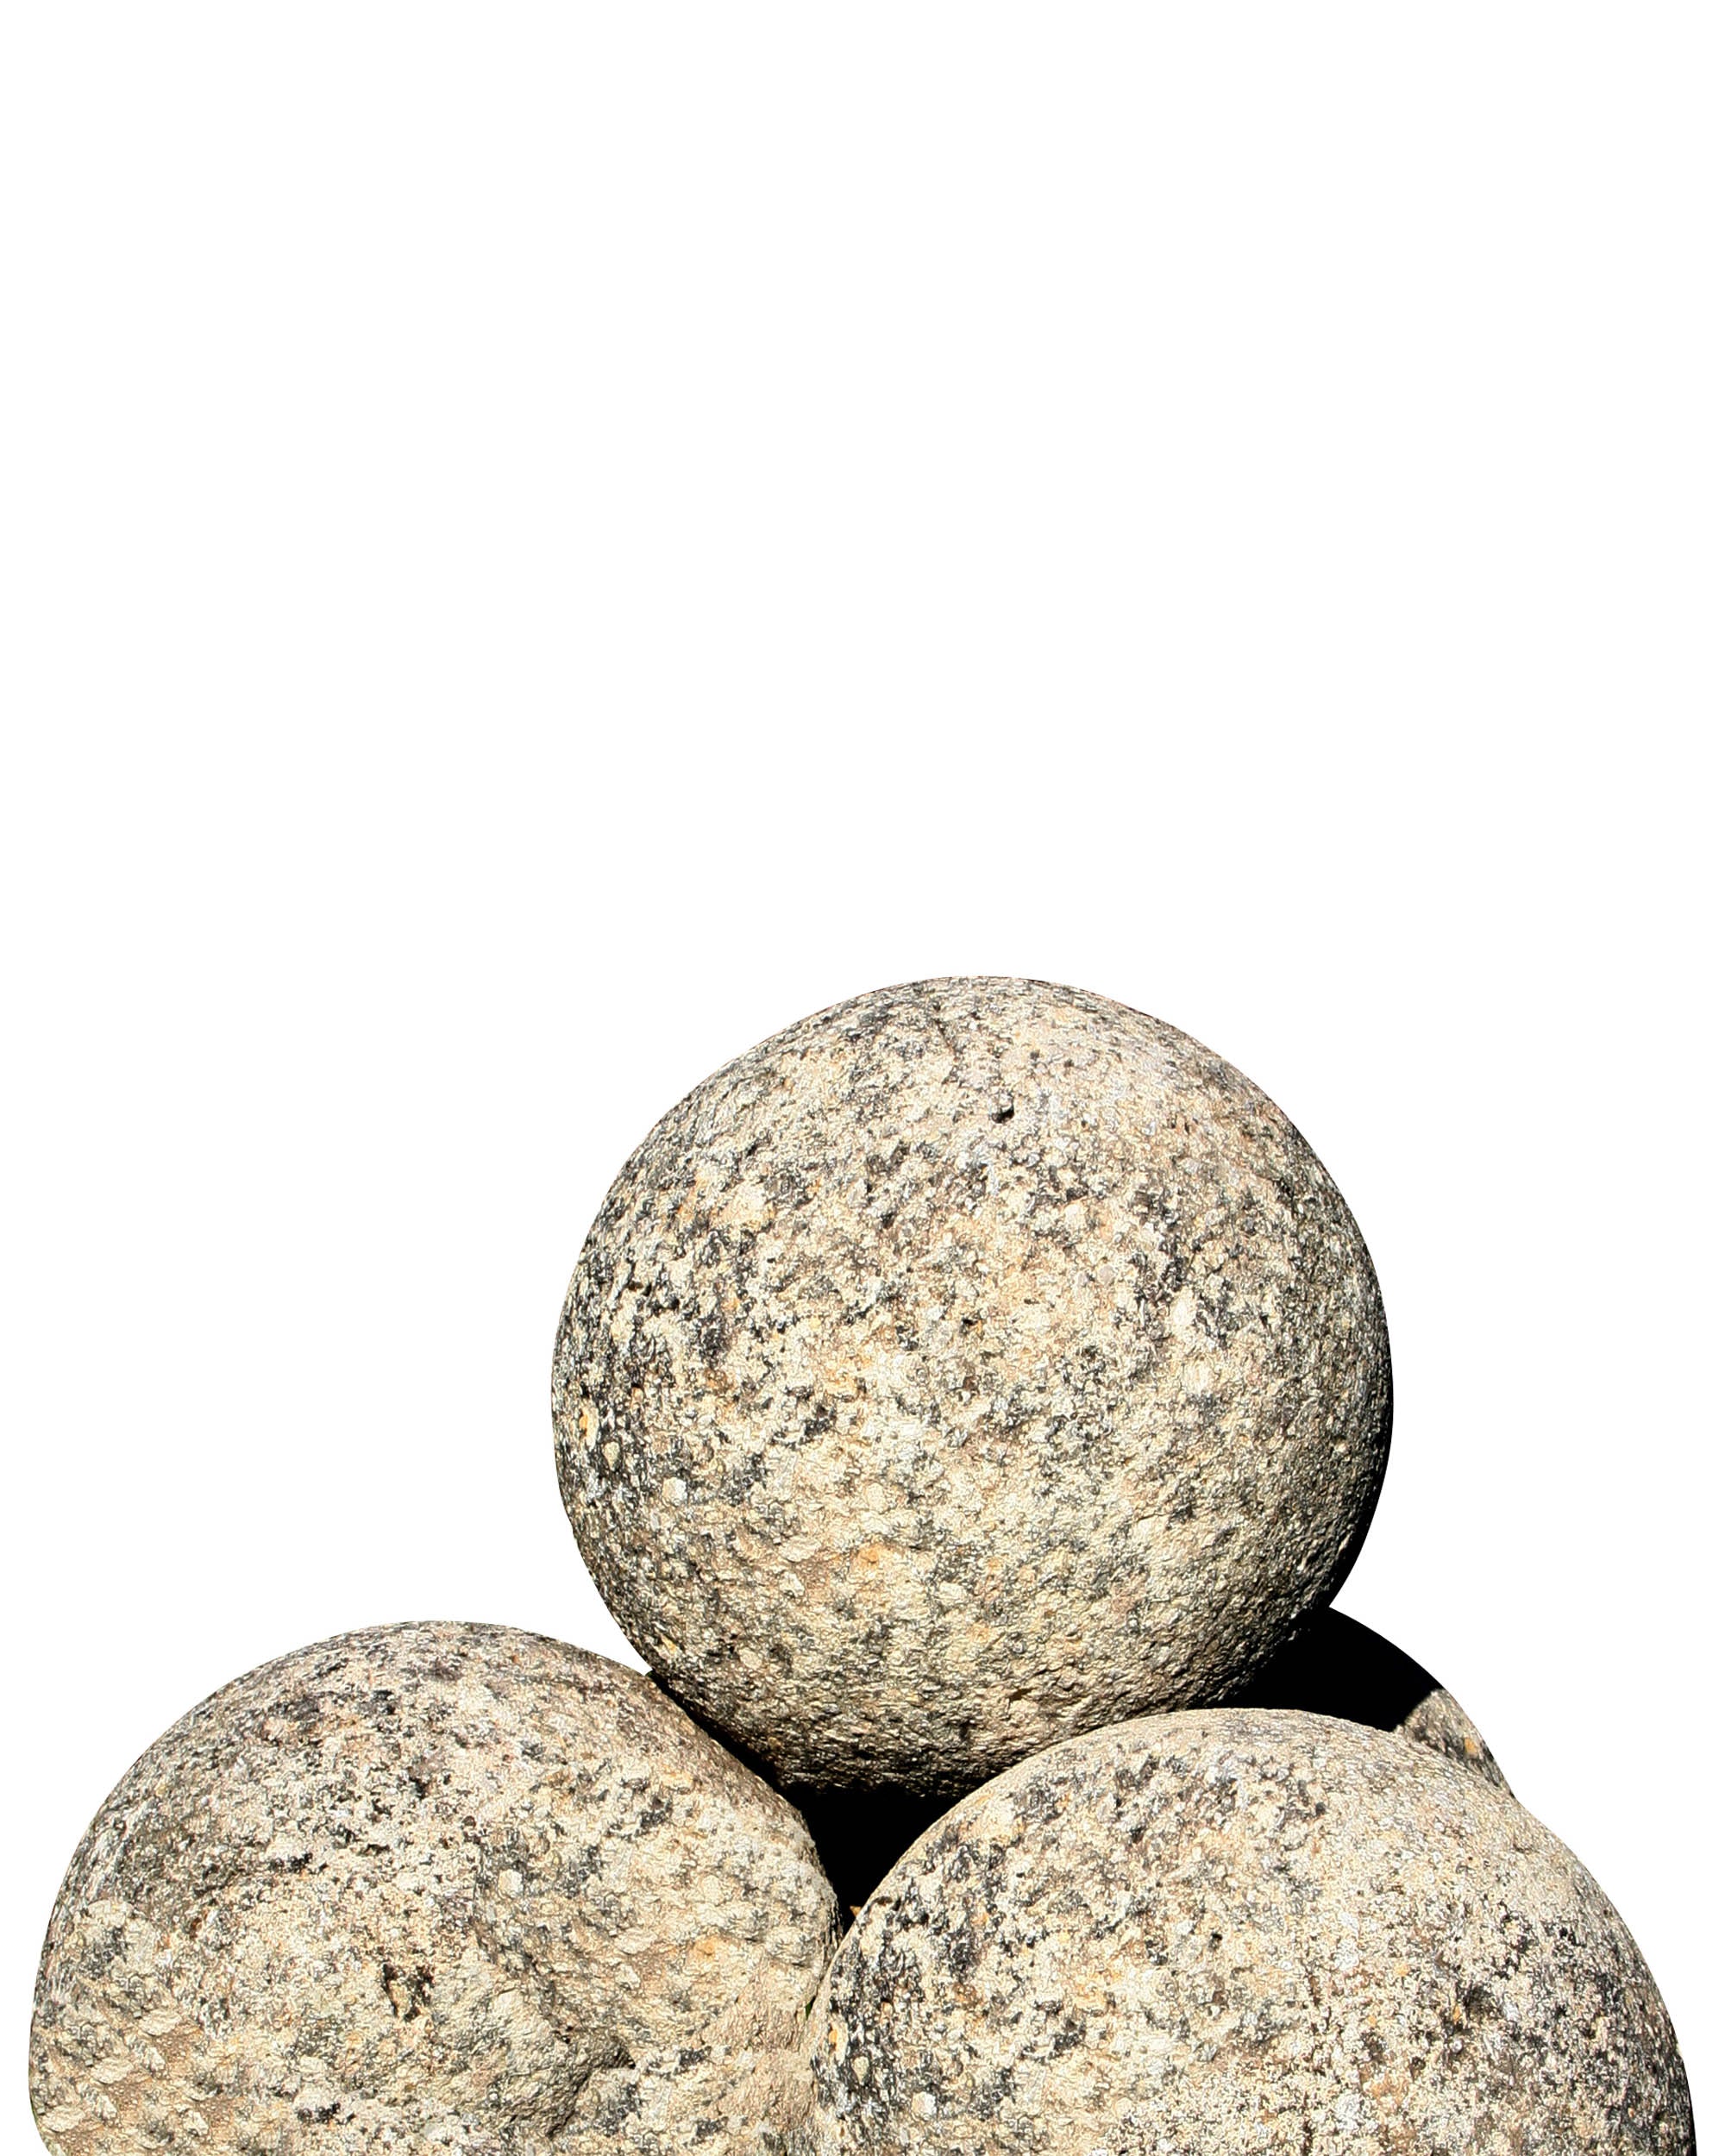 Conjunto de cuatro bolas de jardín realizadas en piedra. Siglo XVIII